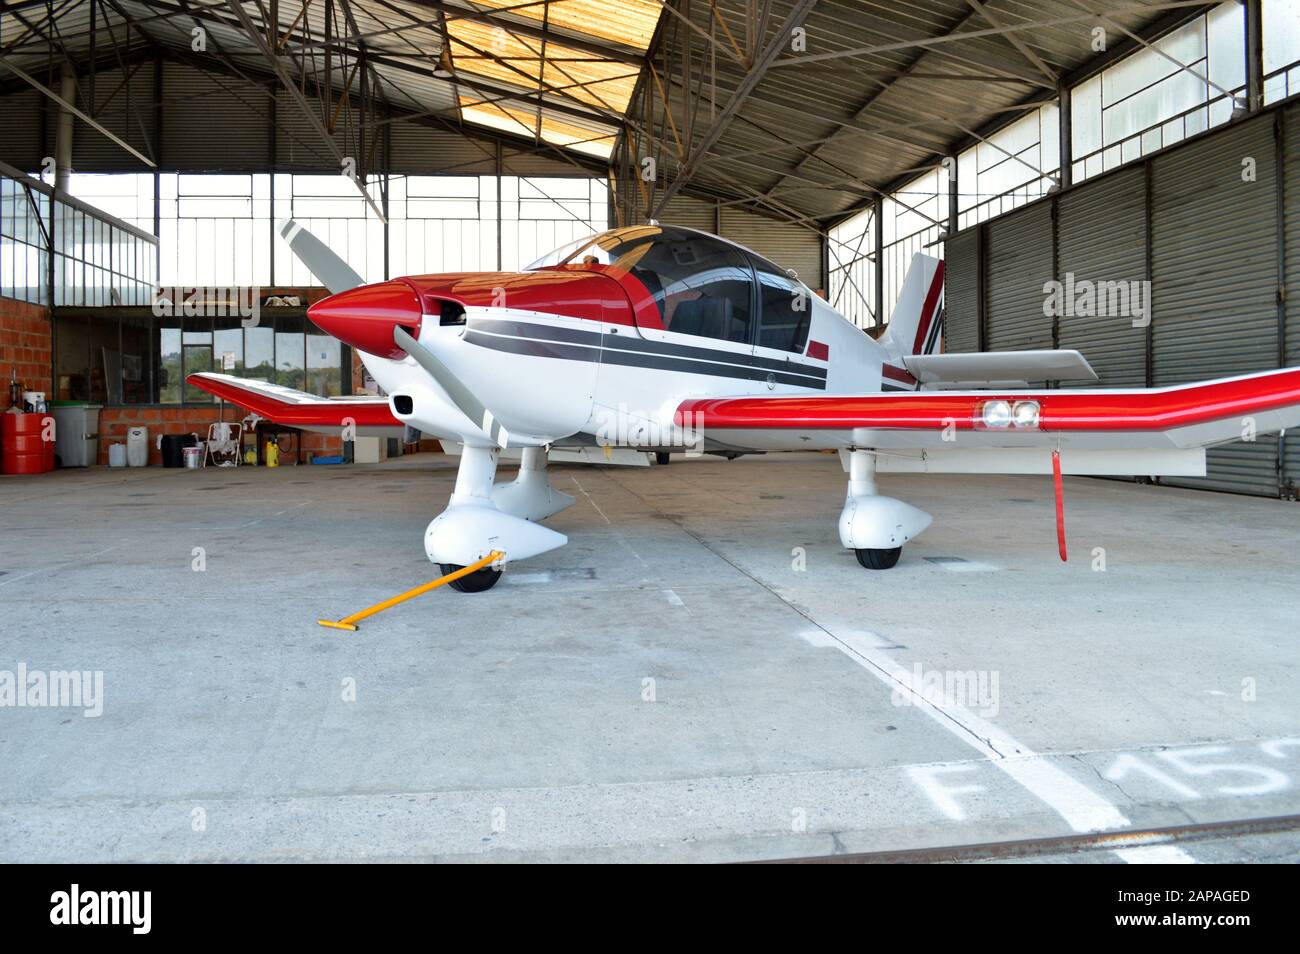 Ein kleines Flugzeug, im Hangarflugzeug auf einem Flughafen geparkt. Stockfoto